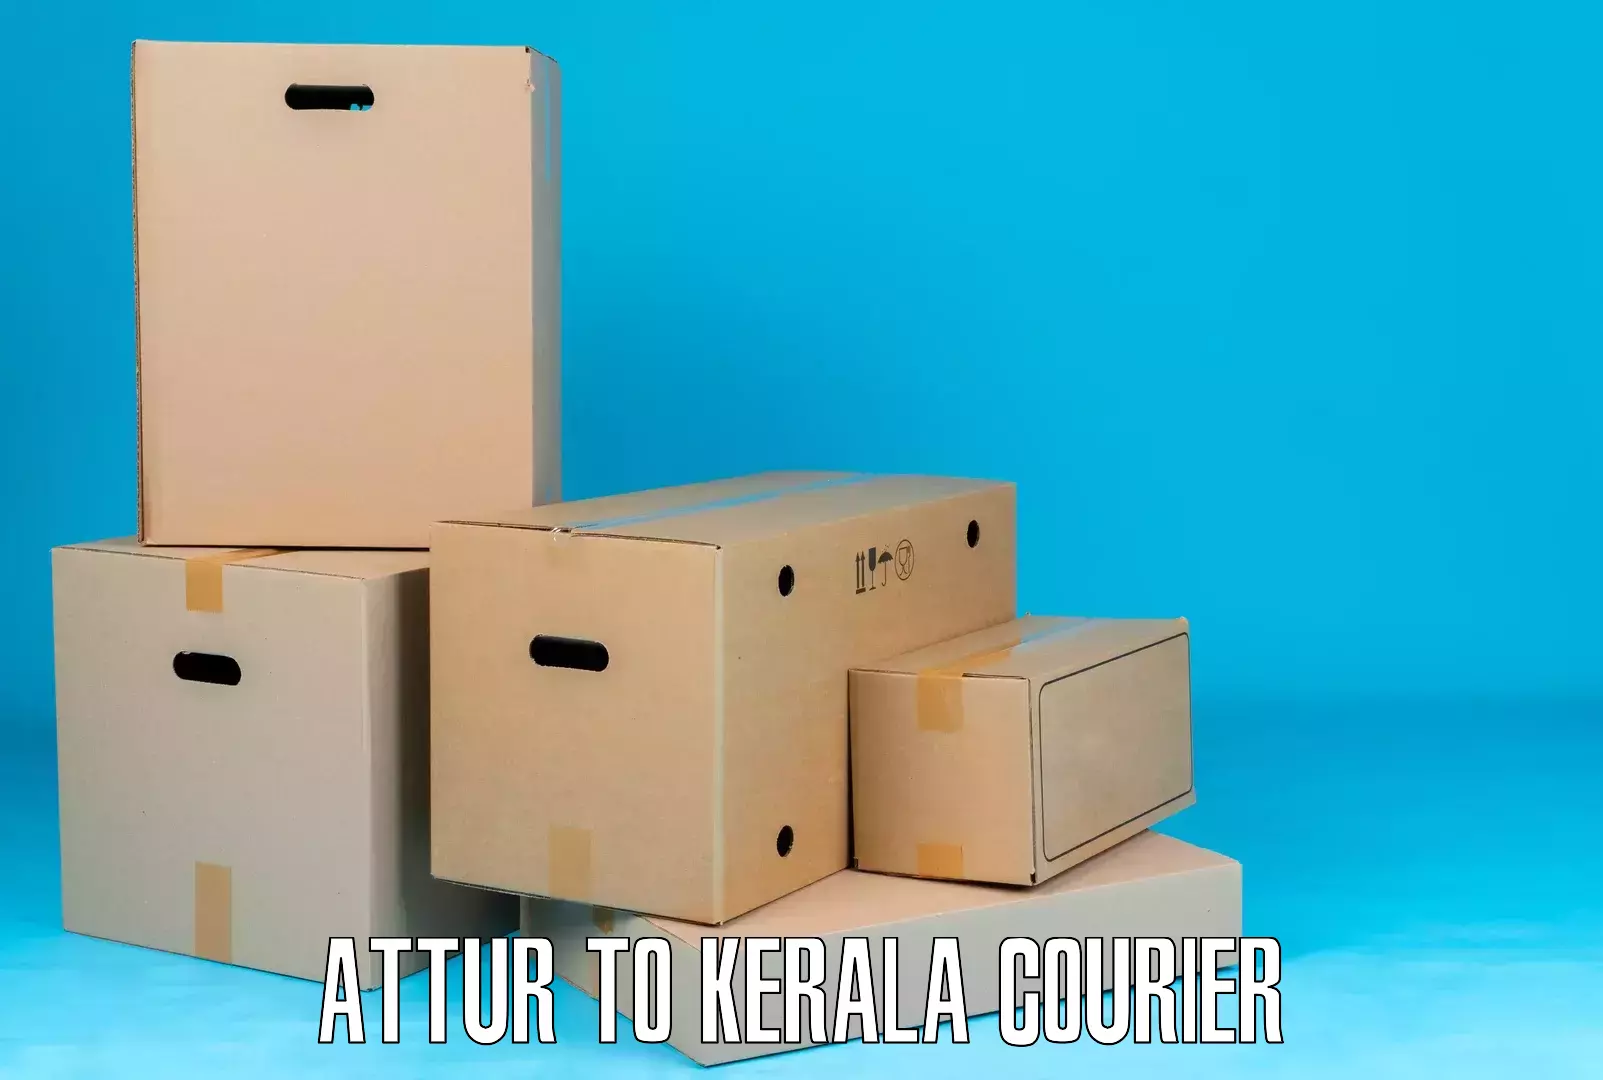 Remote area delivery Attur to Kuttikol